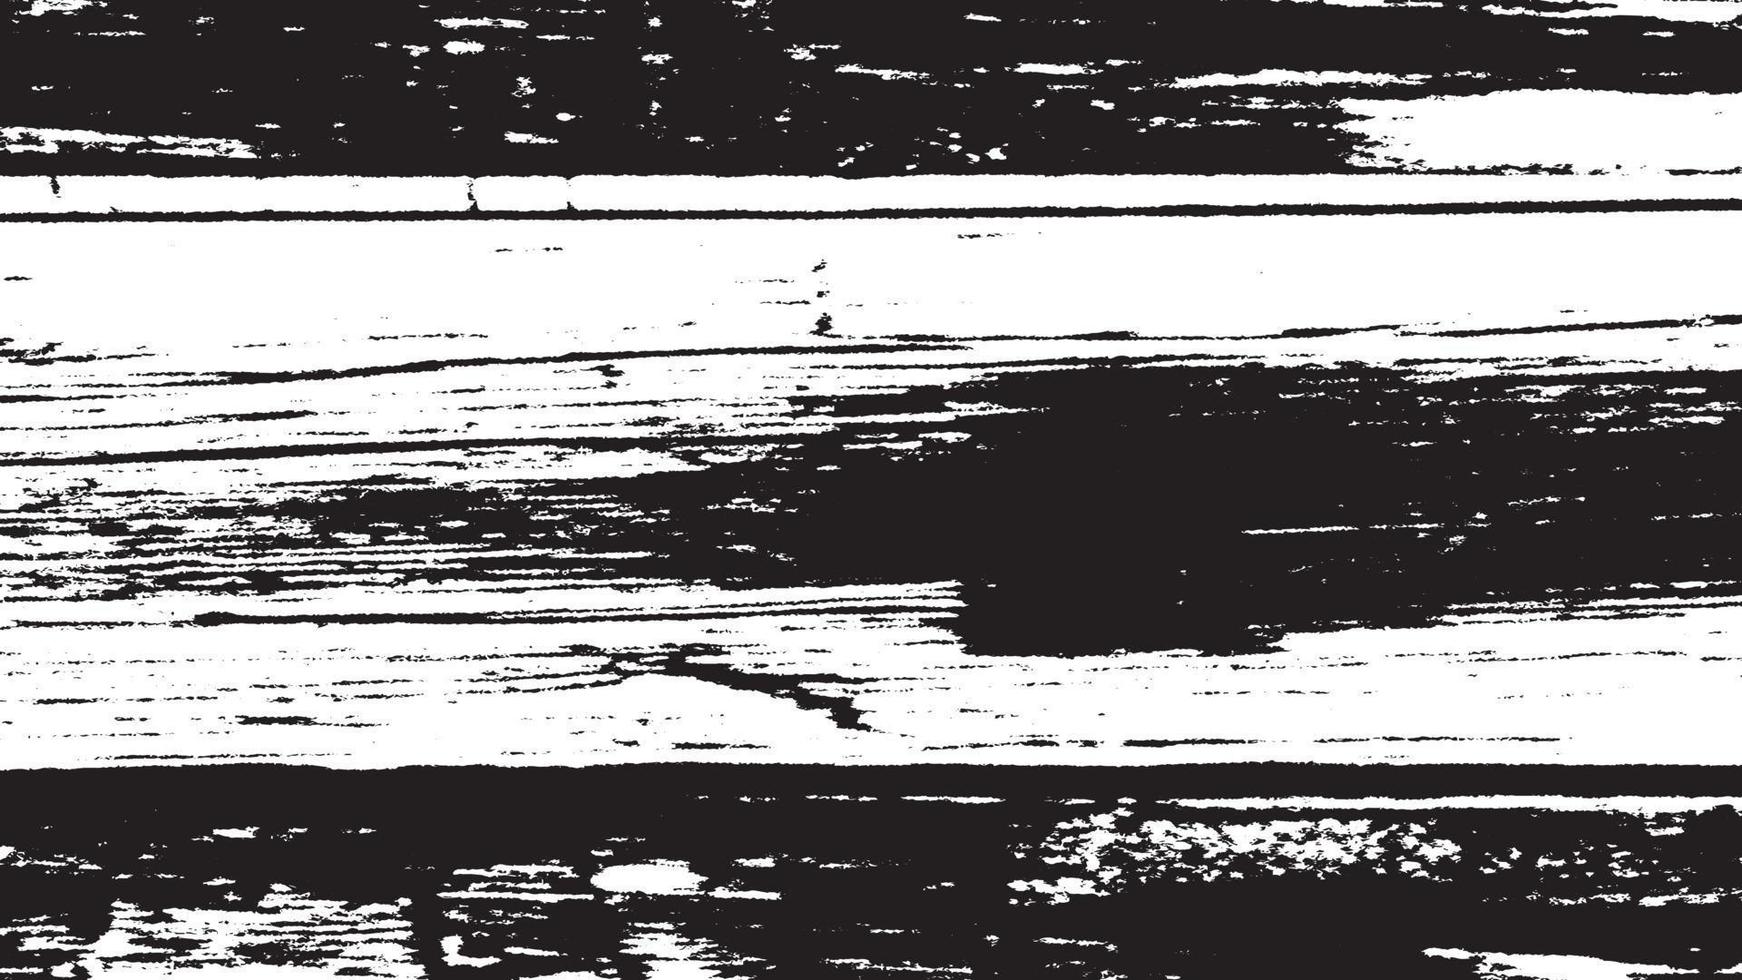 texturas grunge retrô angustiadas, fundo grunge preto branco abstrato, sobreposição de sujeira de vetor angustiado.